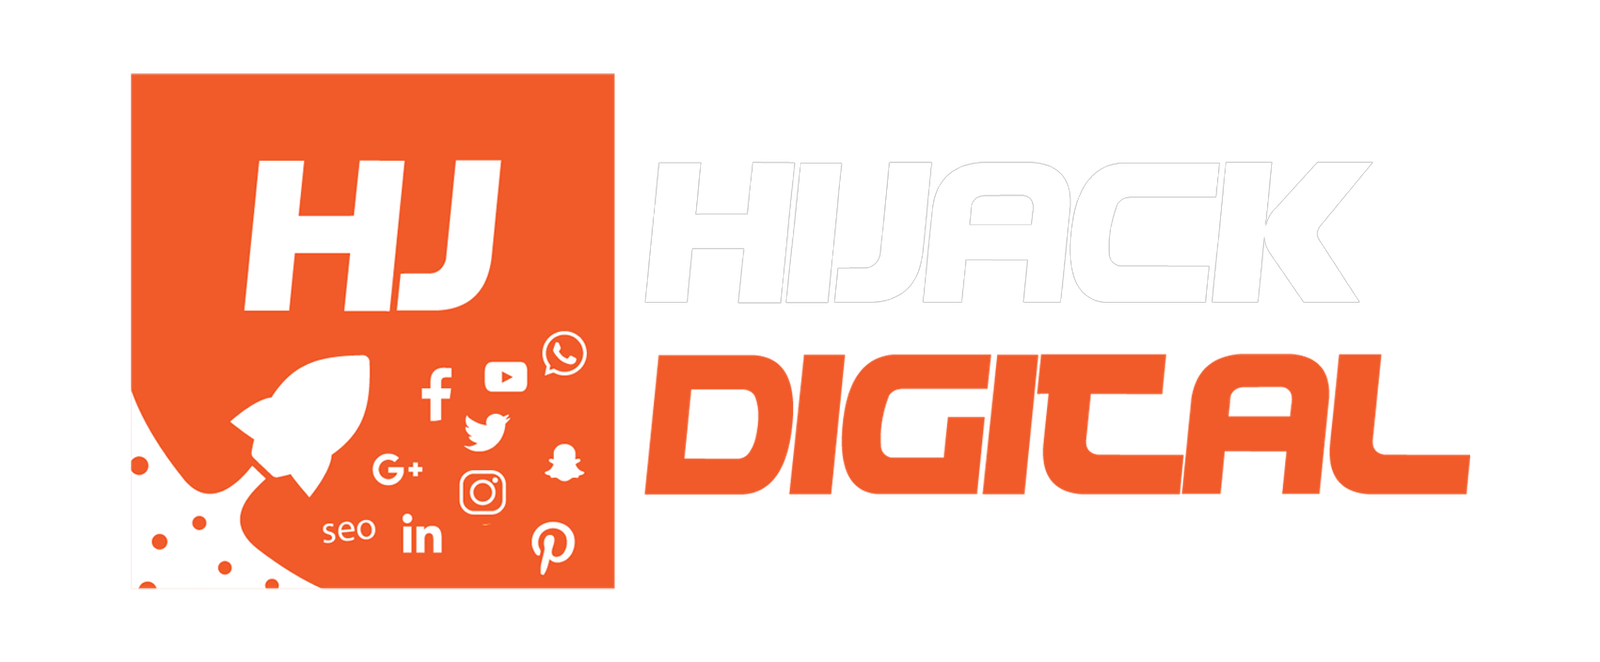 Hijack Digital